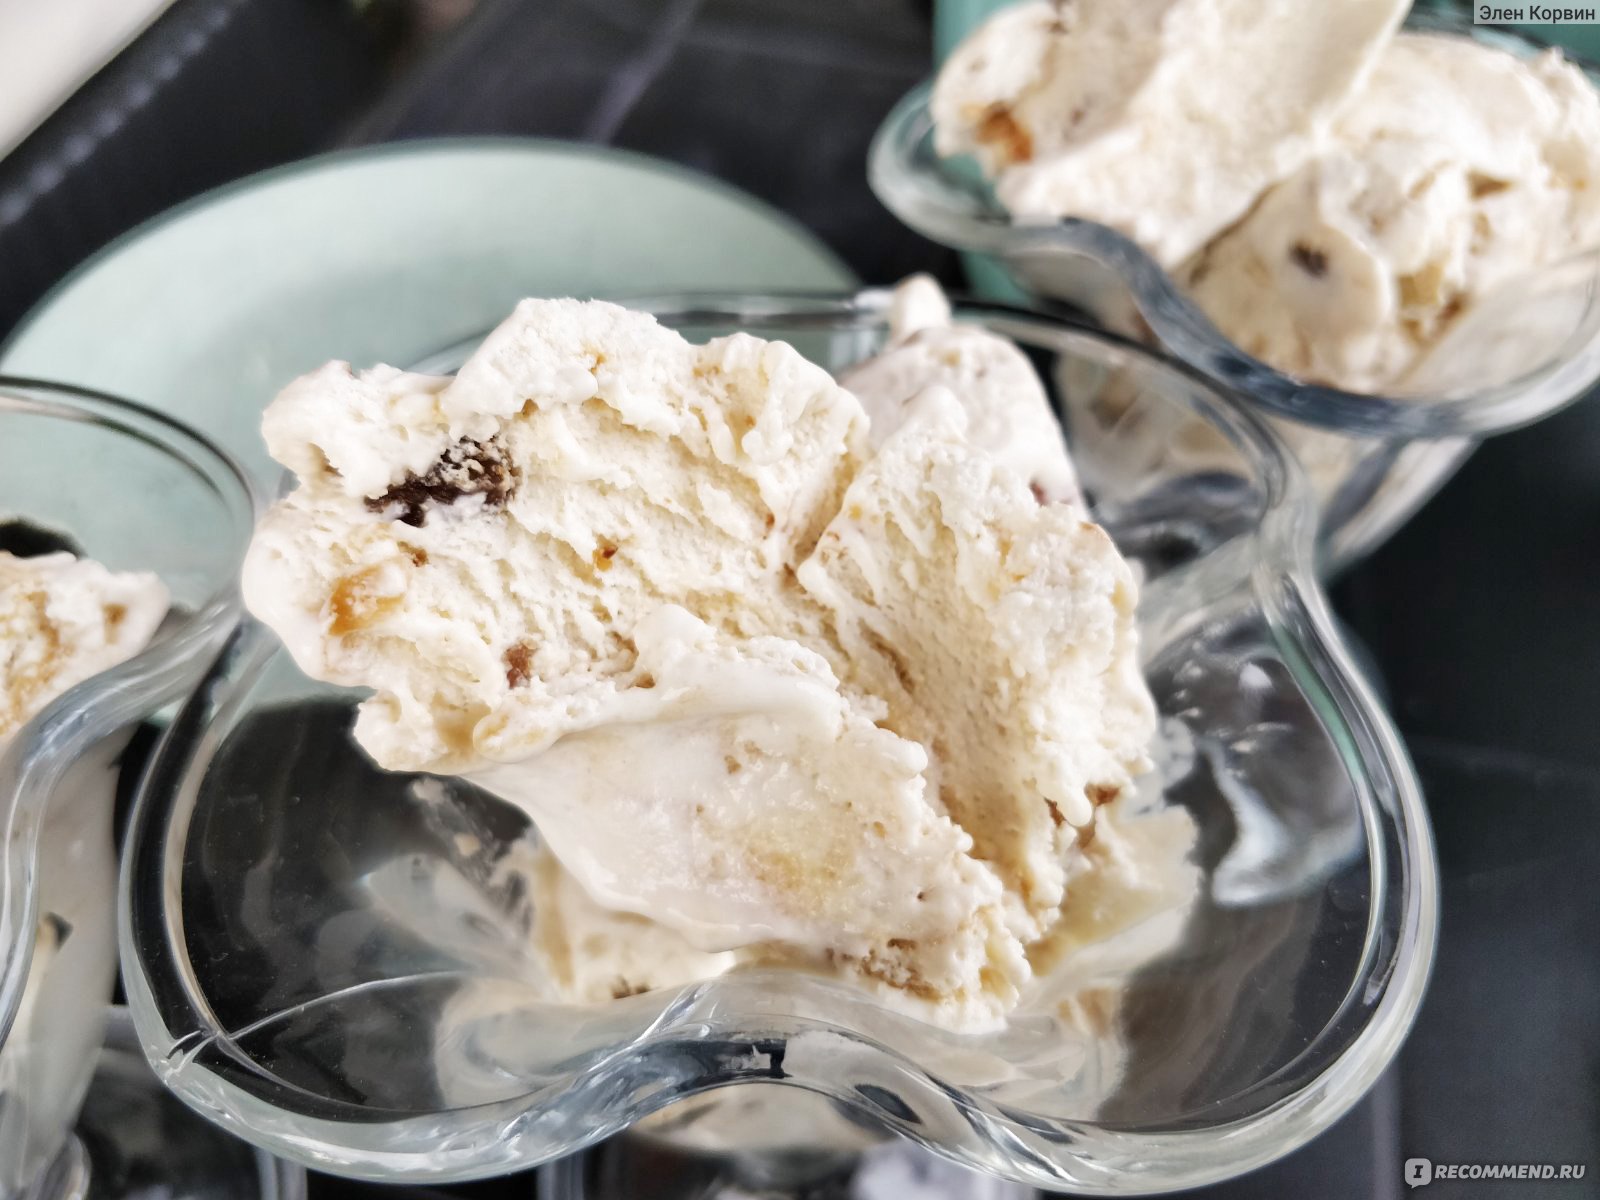 Мороженое MÖVENPICK Грeцкий орех с кленовым сиропом фото